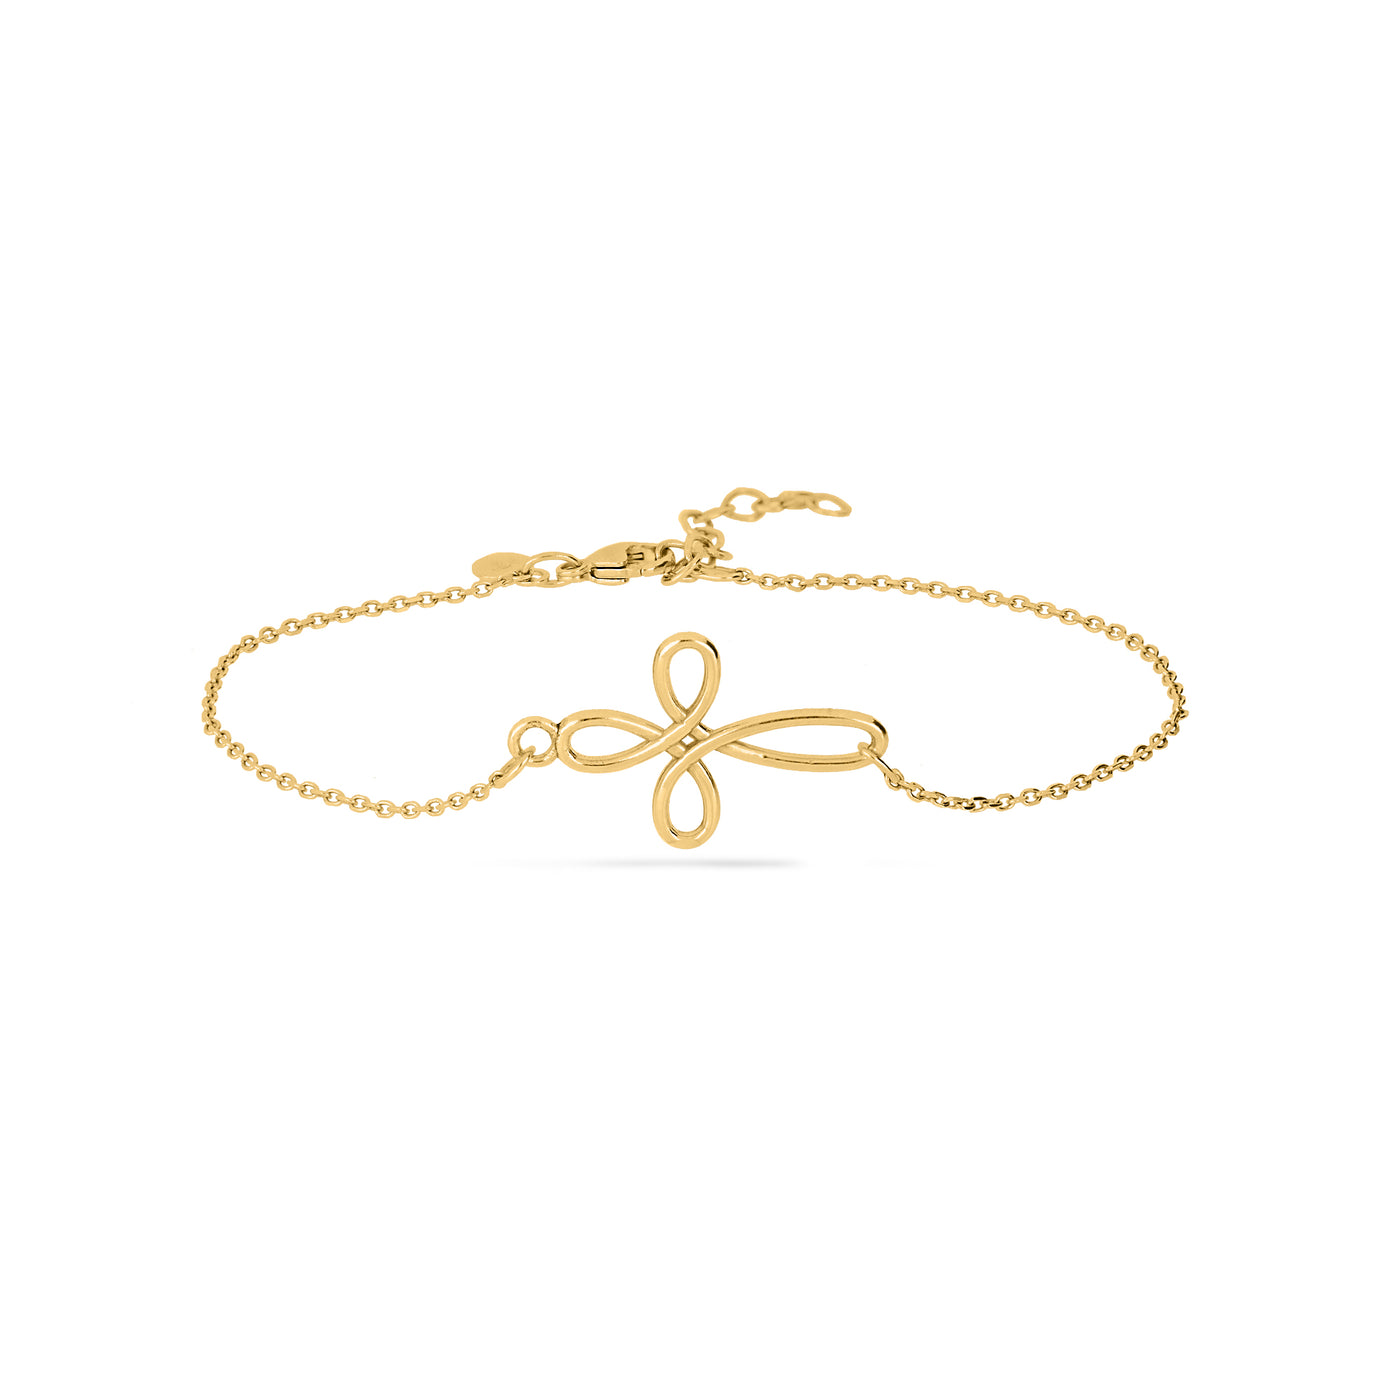 "The Naomi" Infinity Loop Bracelet